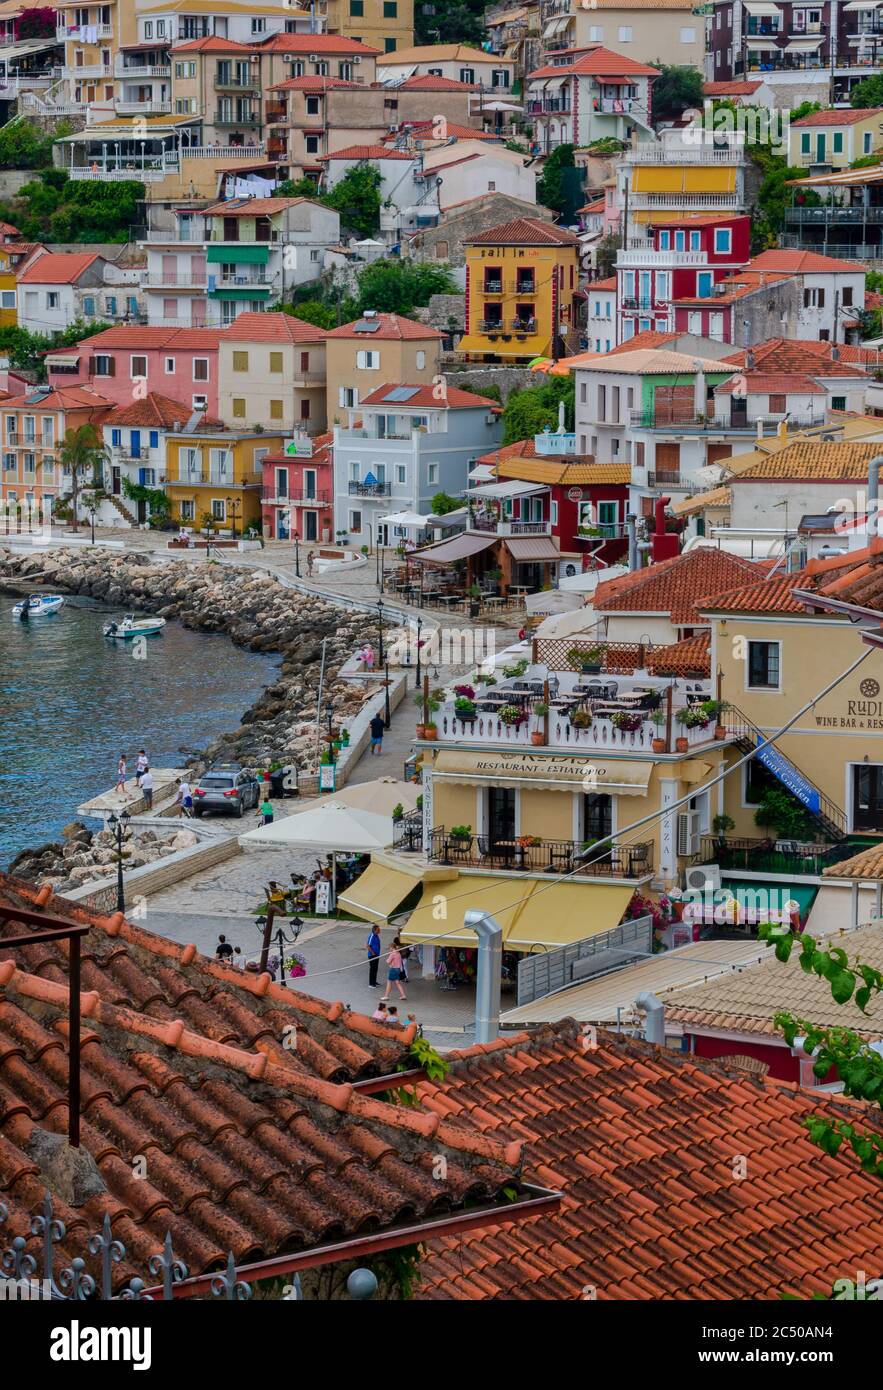 Ein hoher Blick auf die Küstenstadt Parga, Griechenland mit seinen bunten Gebäuden und vielen Unternehmen Catering für Touristen in diesem beliebten Ferienort. Stockfoto